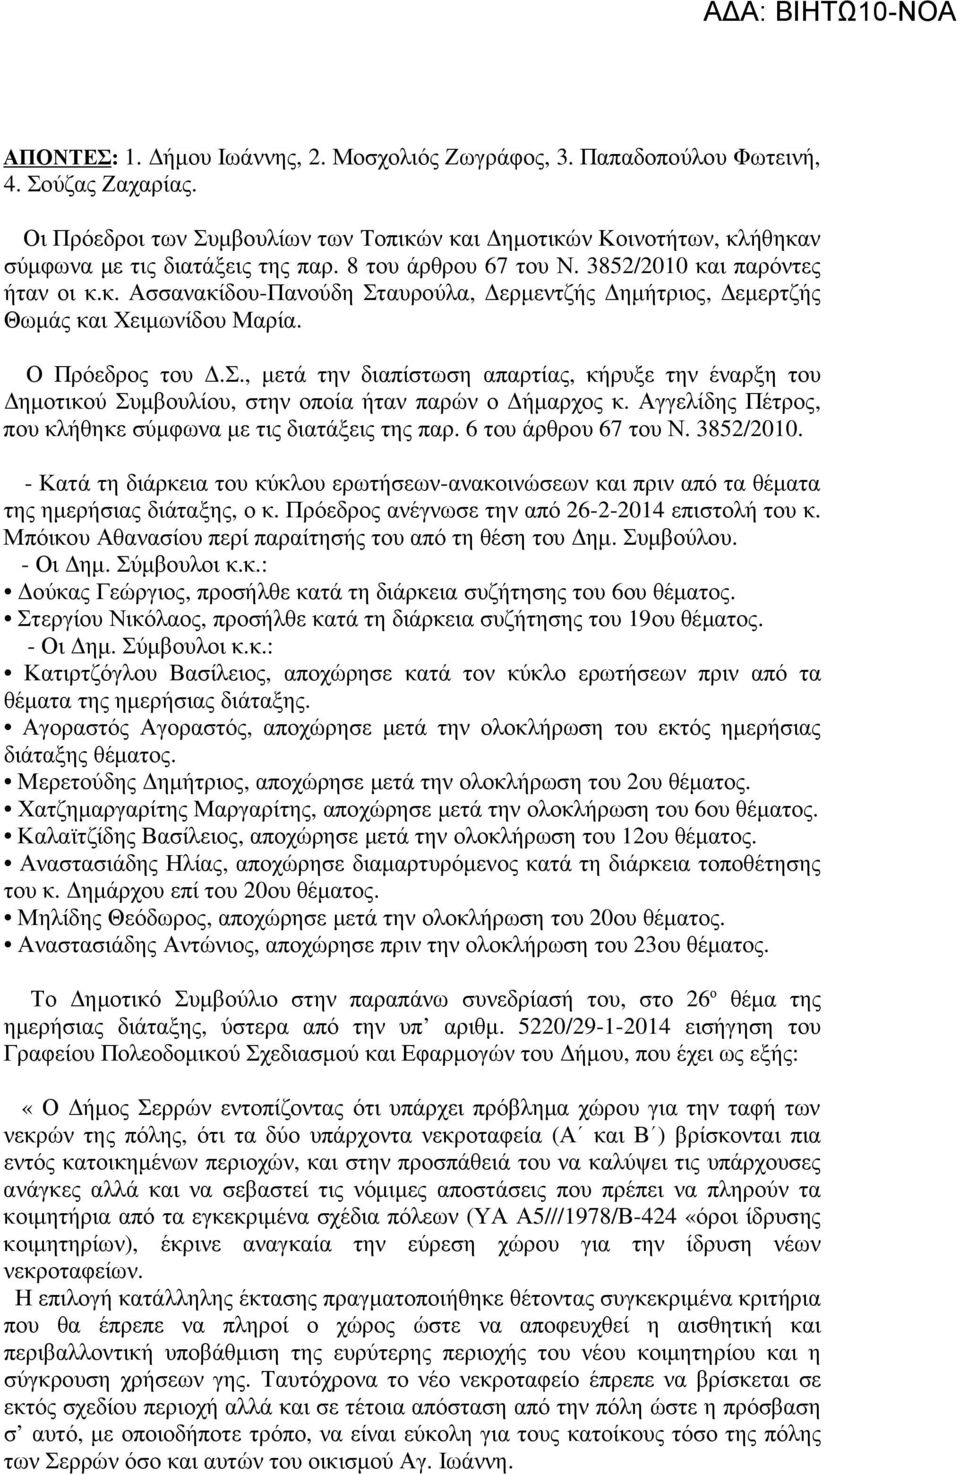 Αγγελίδης Πέτρος, που κλήθηκε σύµφωνα µε τις διατάξεις της παρ. 6 του άρθρου 67 του Ν. 3852/2010.